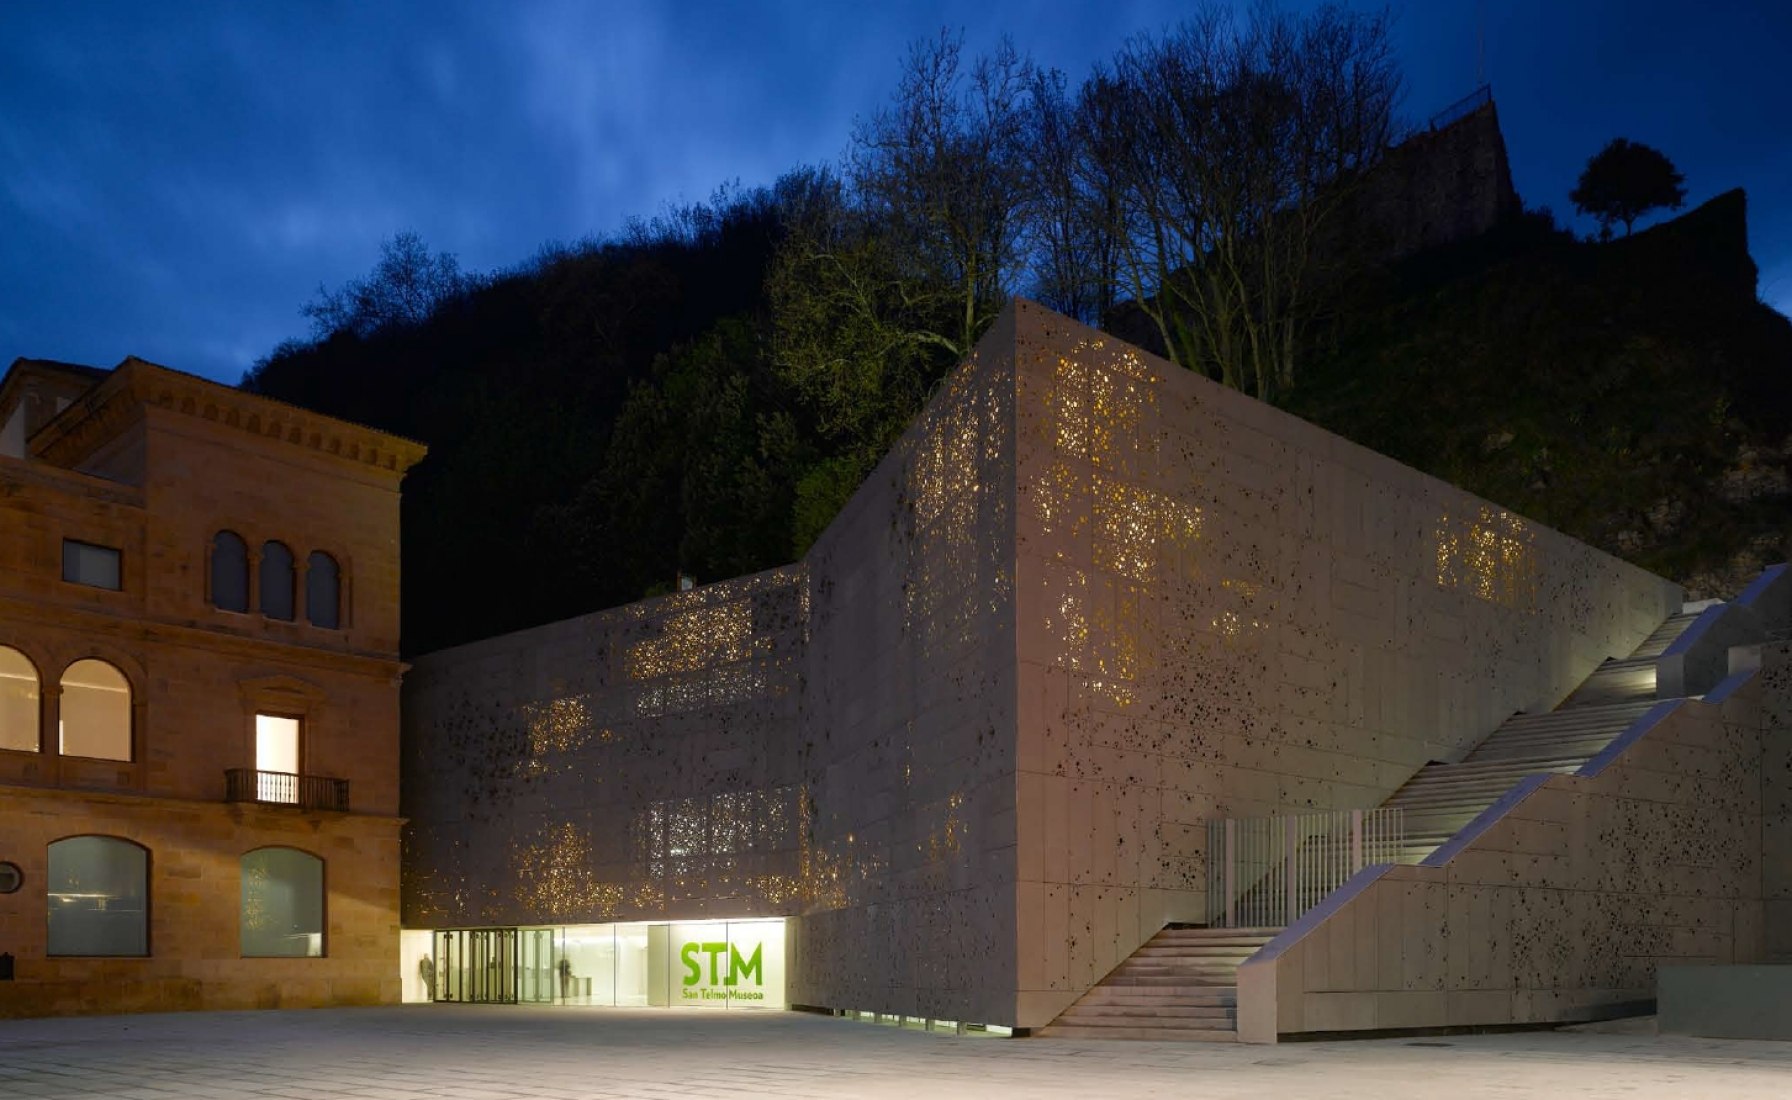 Museo de SAN TELMO en San Sebastián, arquitectos Fuensanta Nieto y Enrique Sobejano